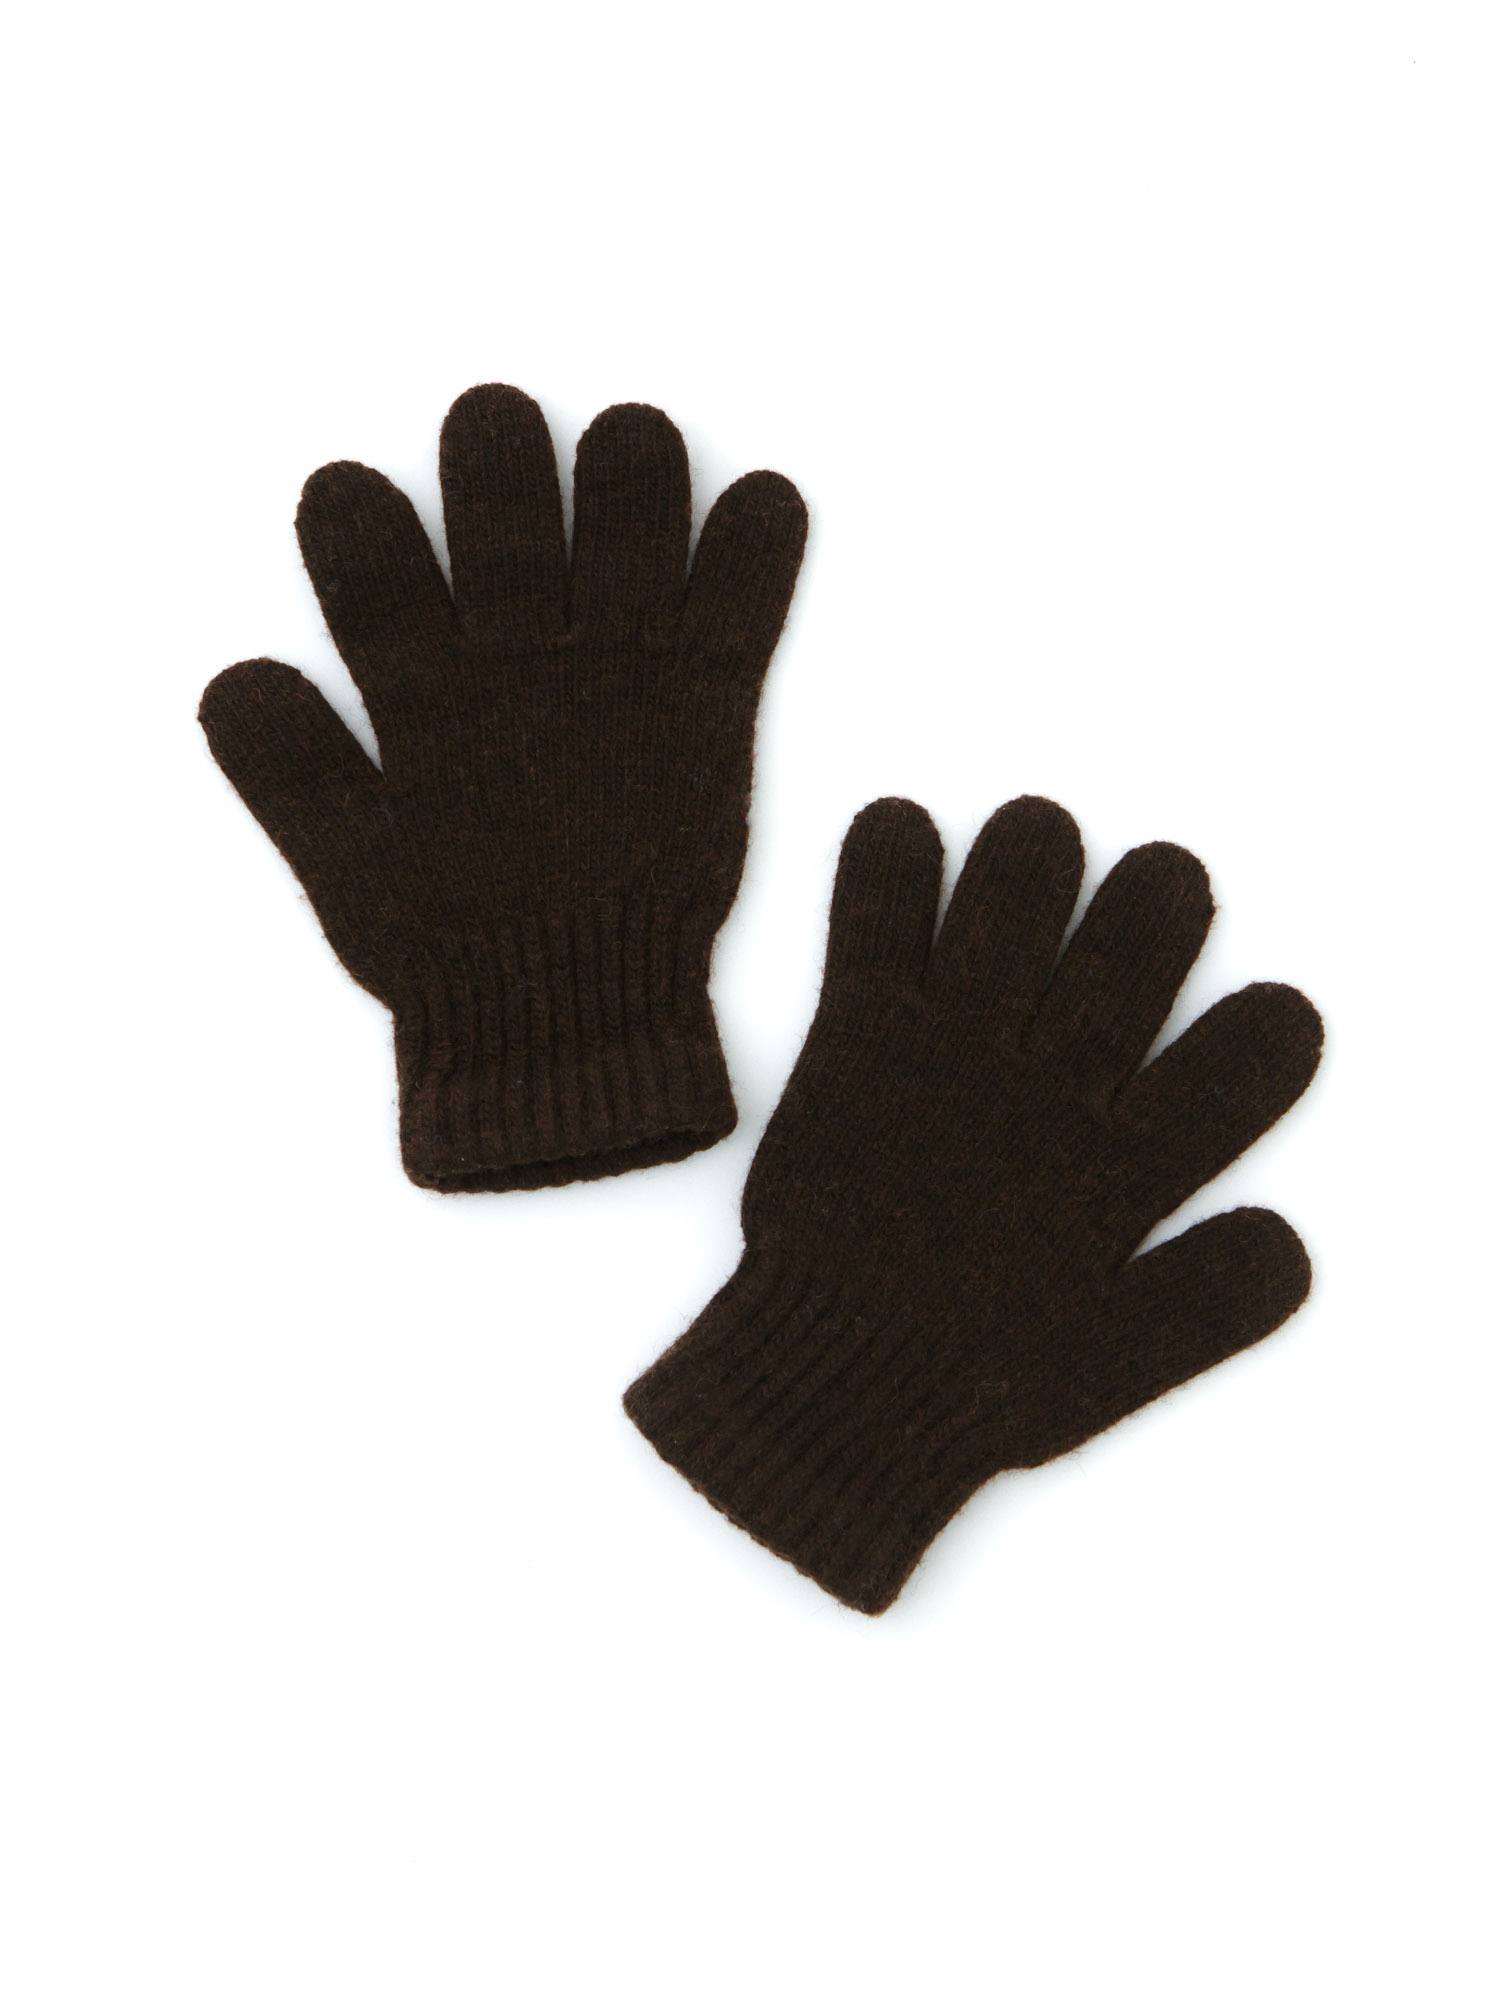 Детские перчатки из монгольской шерсти СК ТК БАТСЕЖY, цвет тёмно-коричневый - фото 1